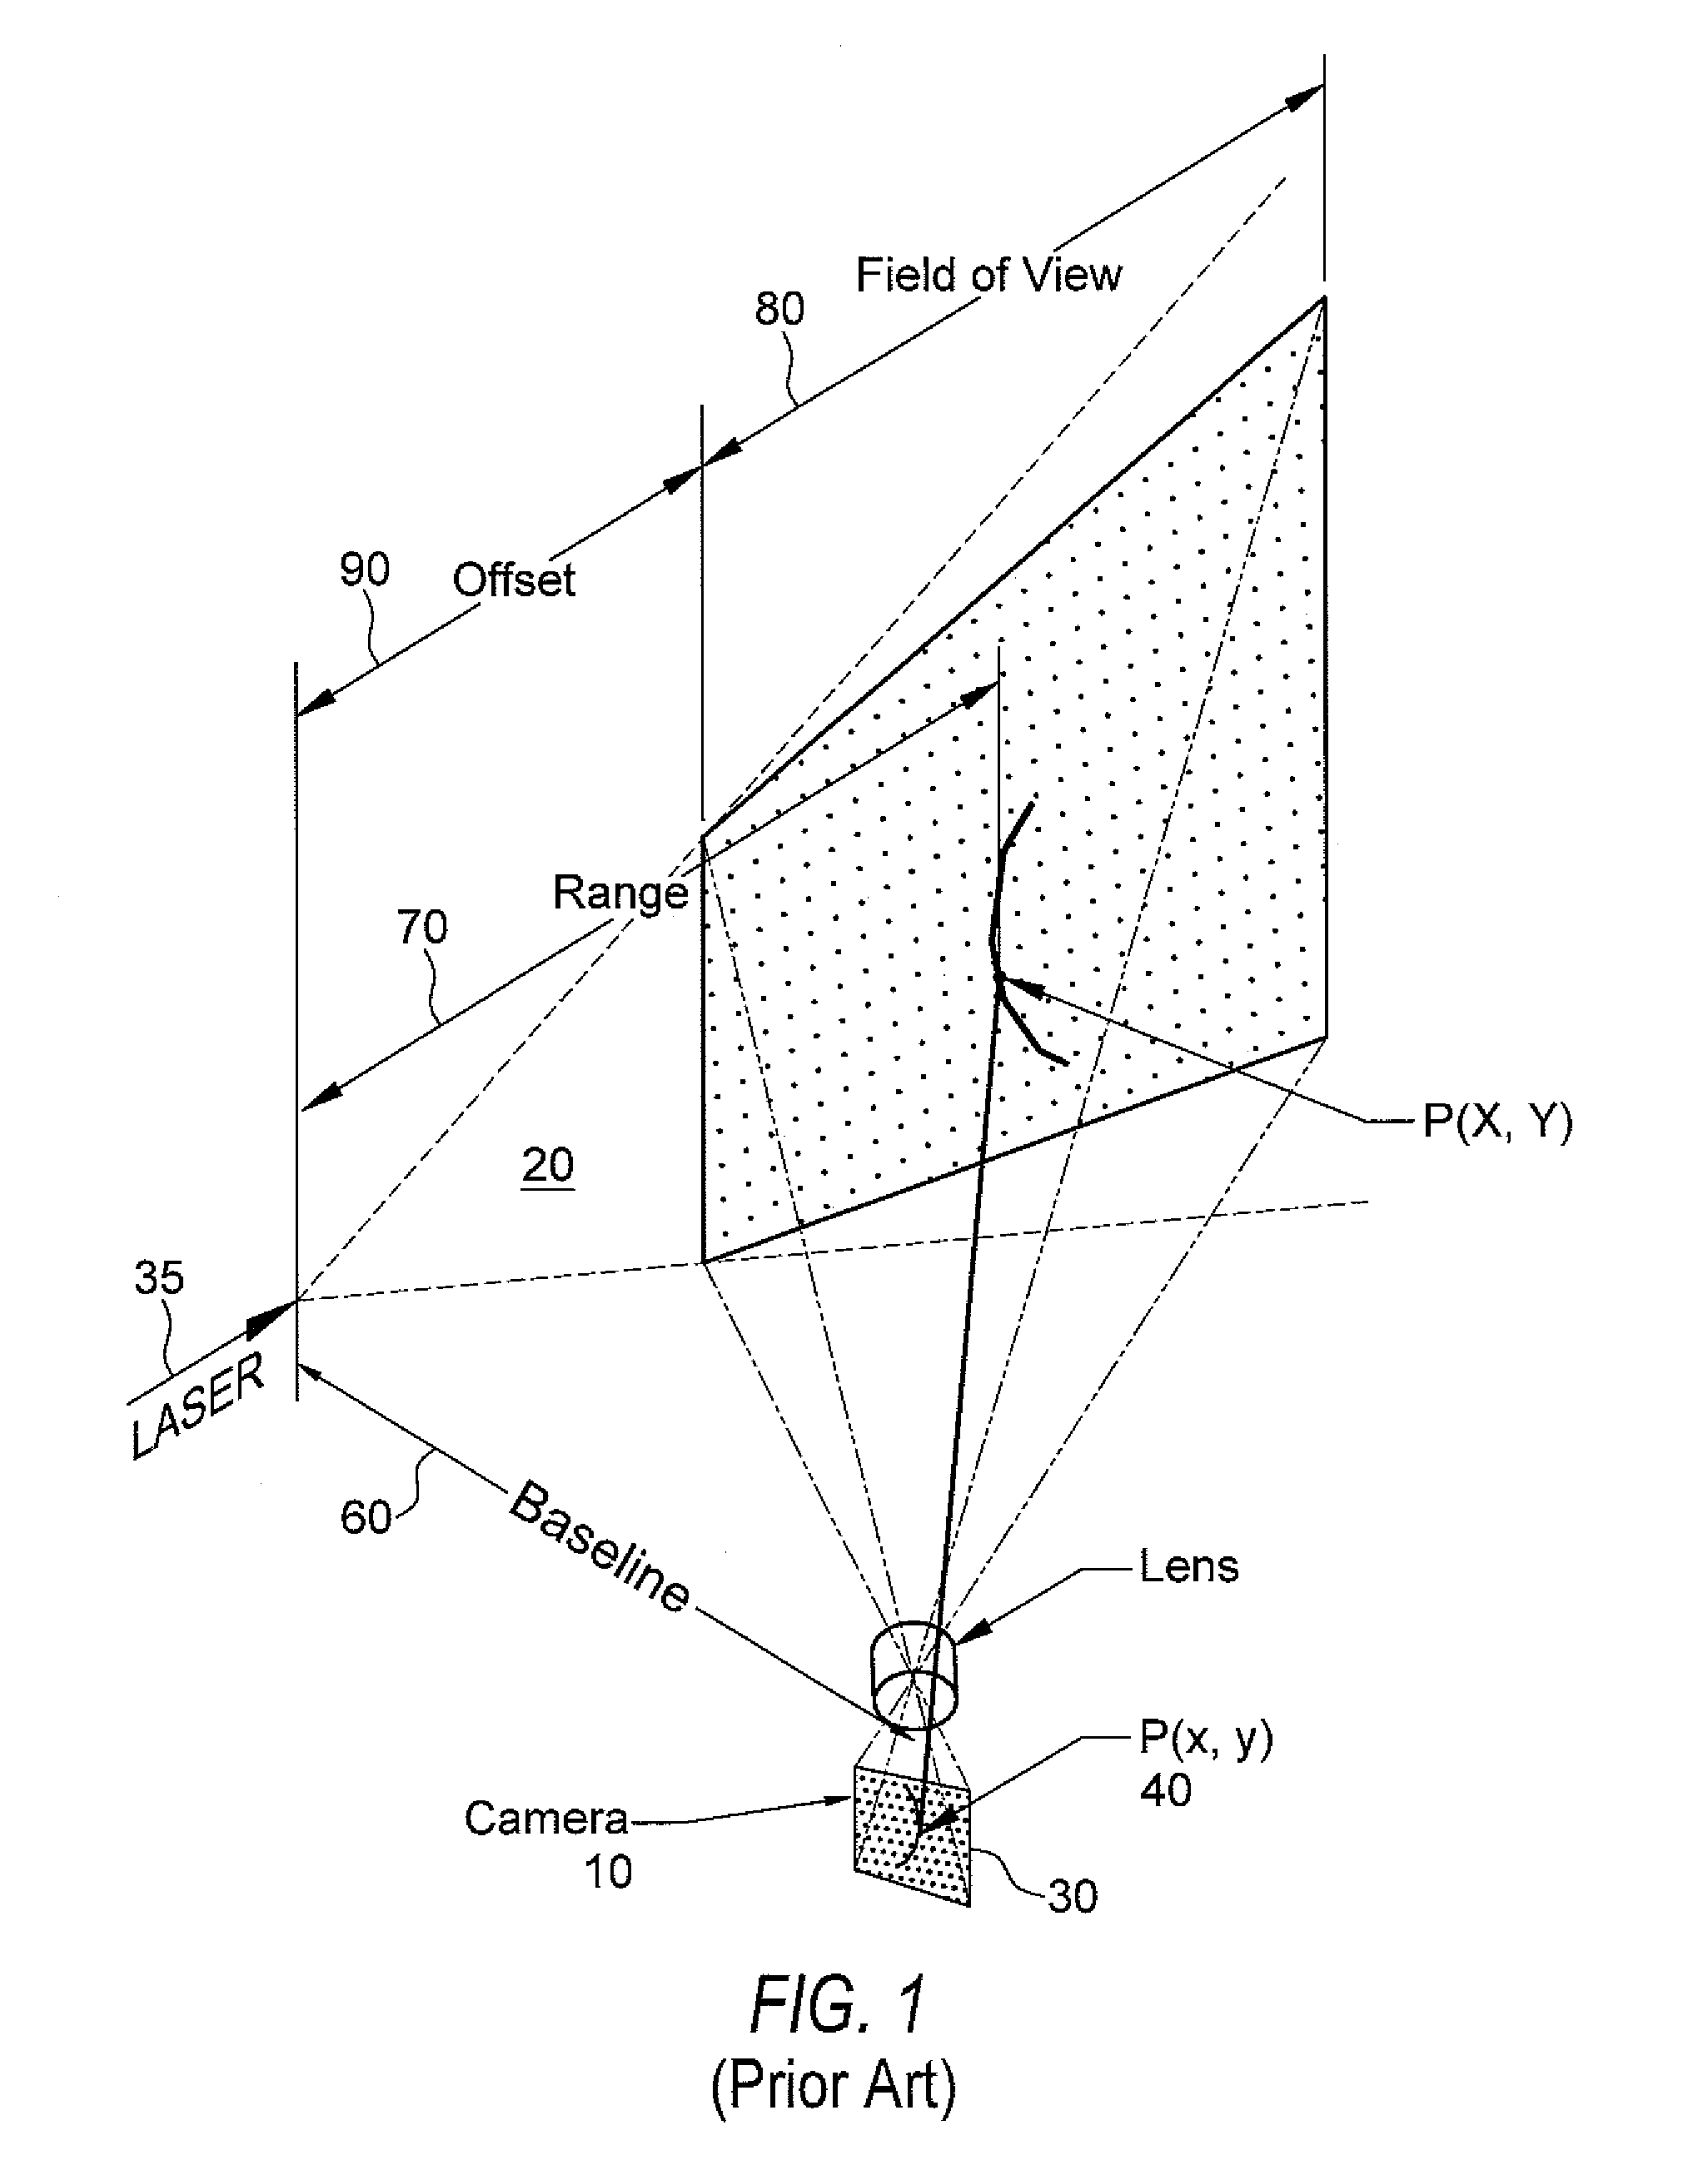 Laser triangulation system